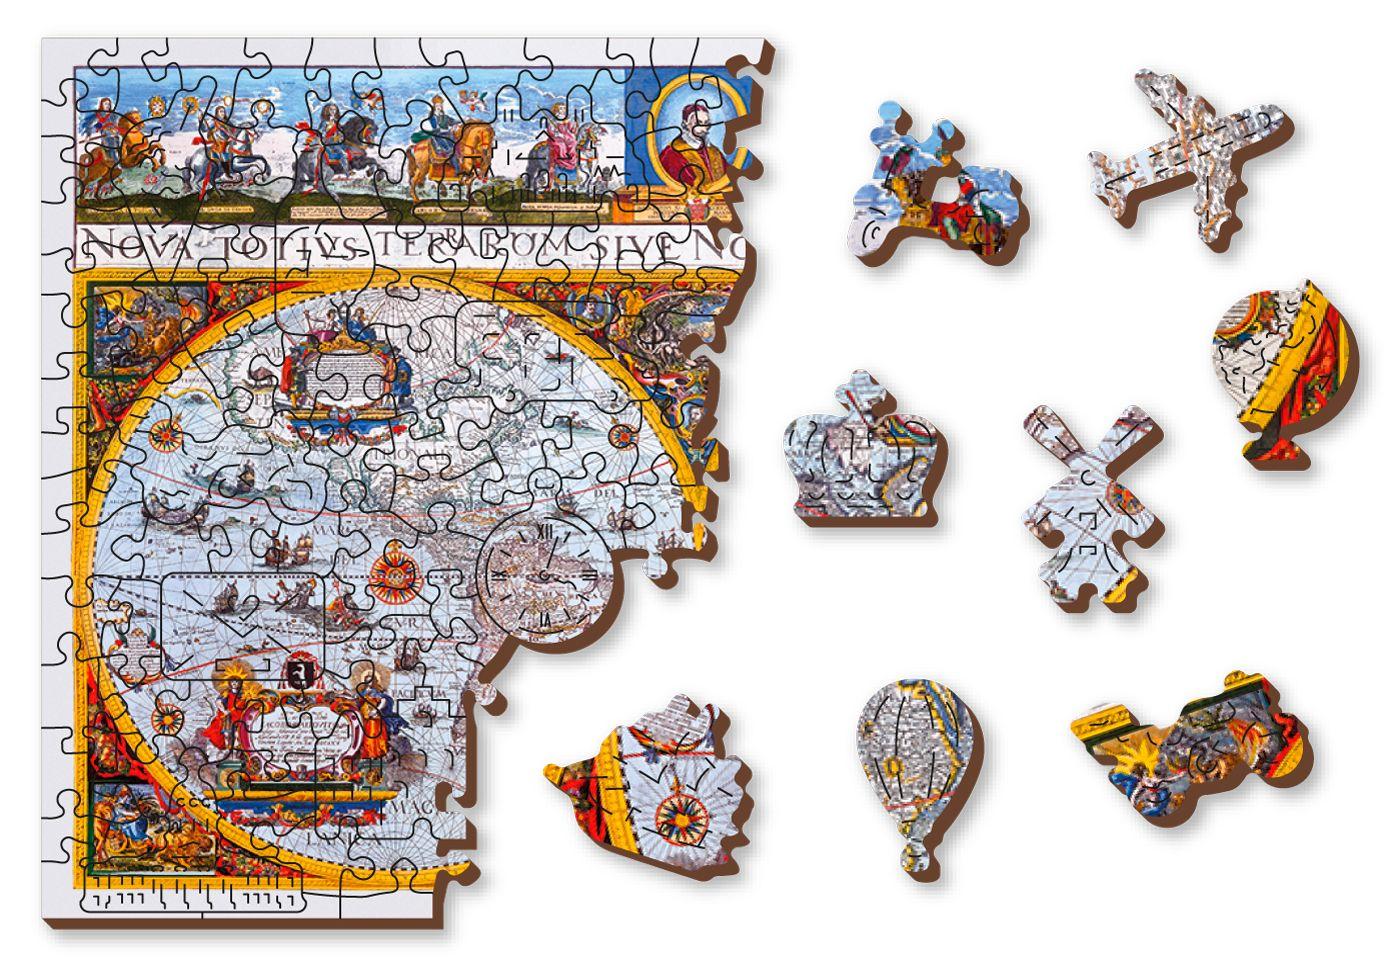 Drewniane Puzzle z figurkami - Mapa Nova Terrarum Antyczna, 505 elementów